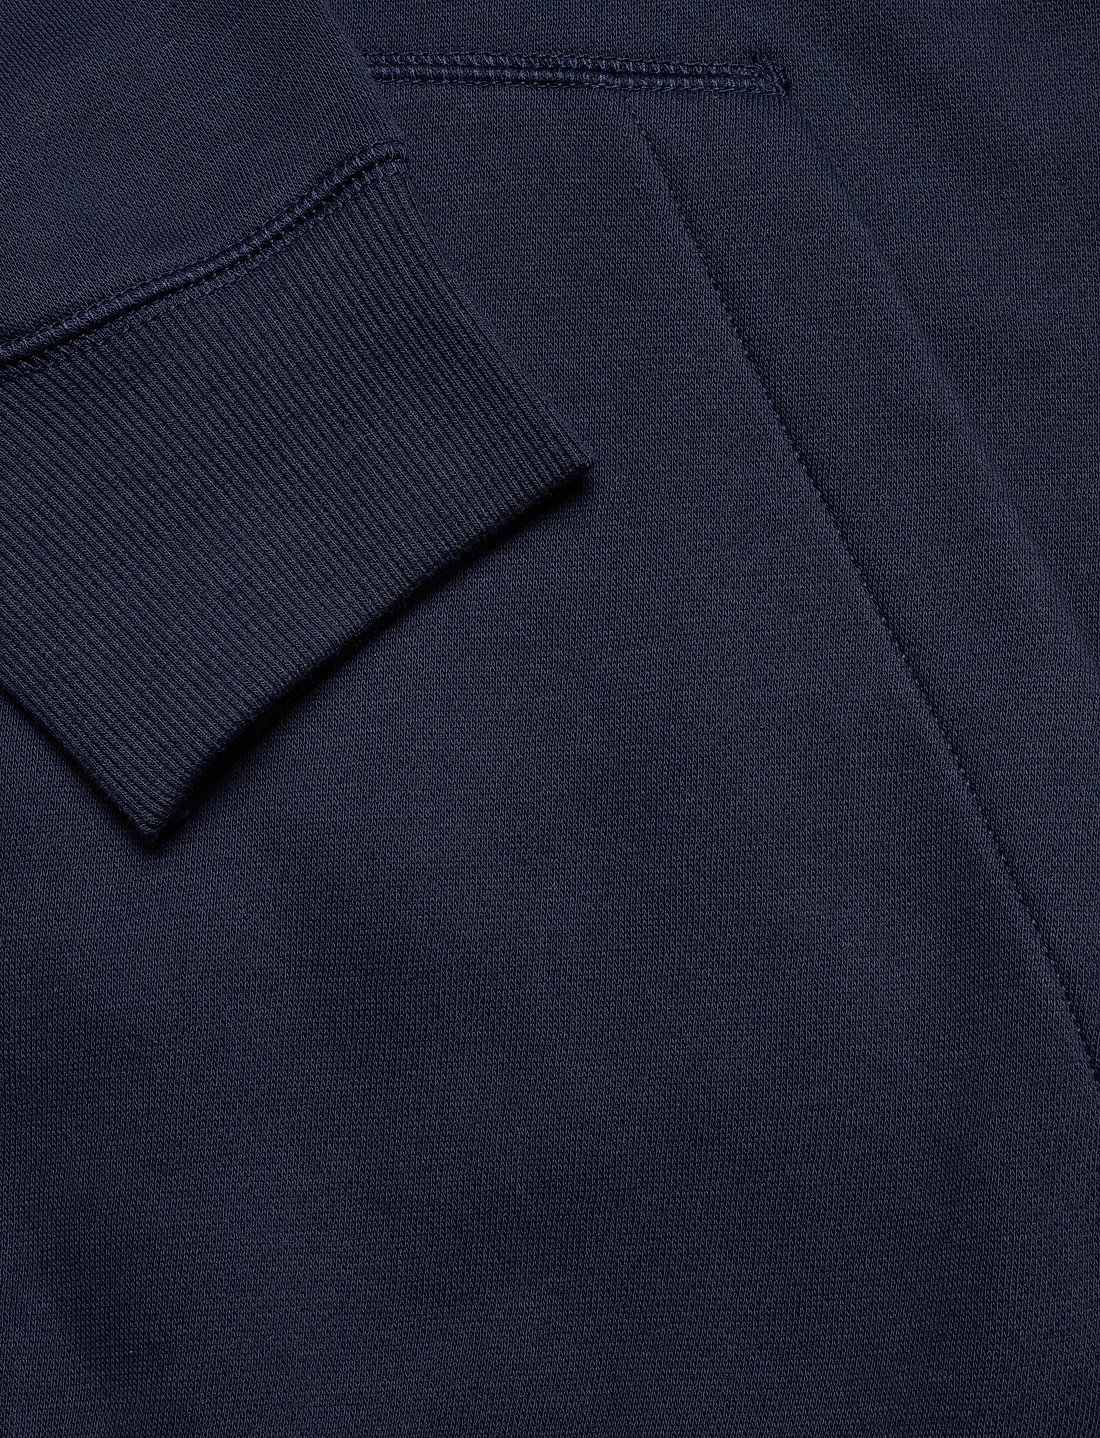 G-Star RAW Premium Core Hdd einkaufen – & Booztlet Sw – bei kapuzenpullover sweatshirts L\\s